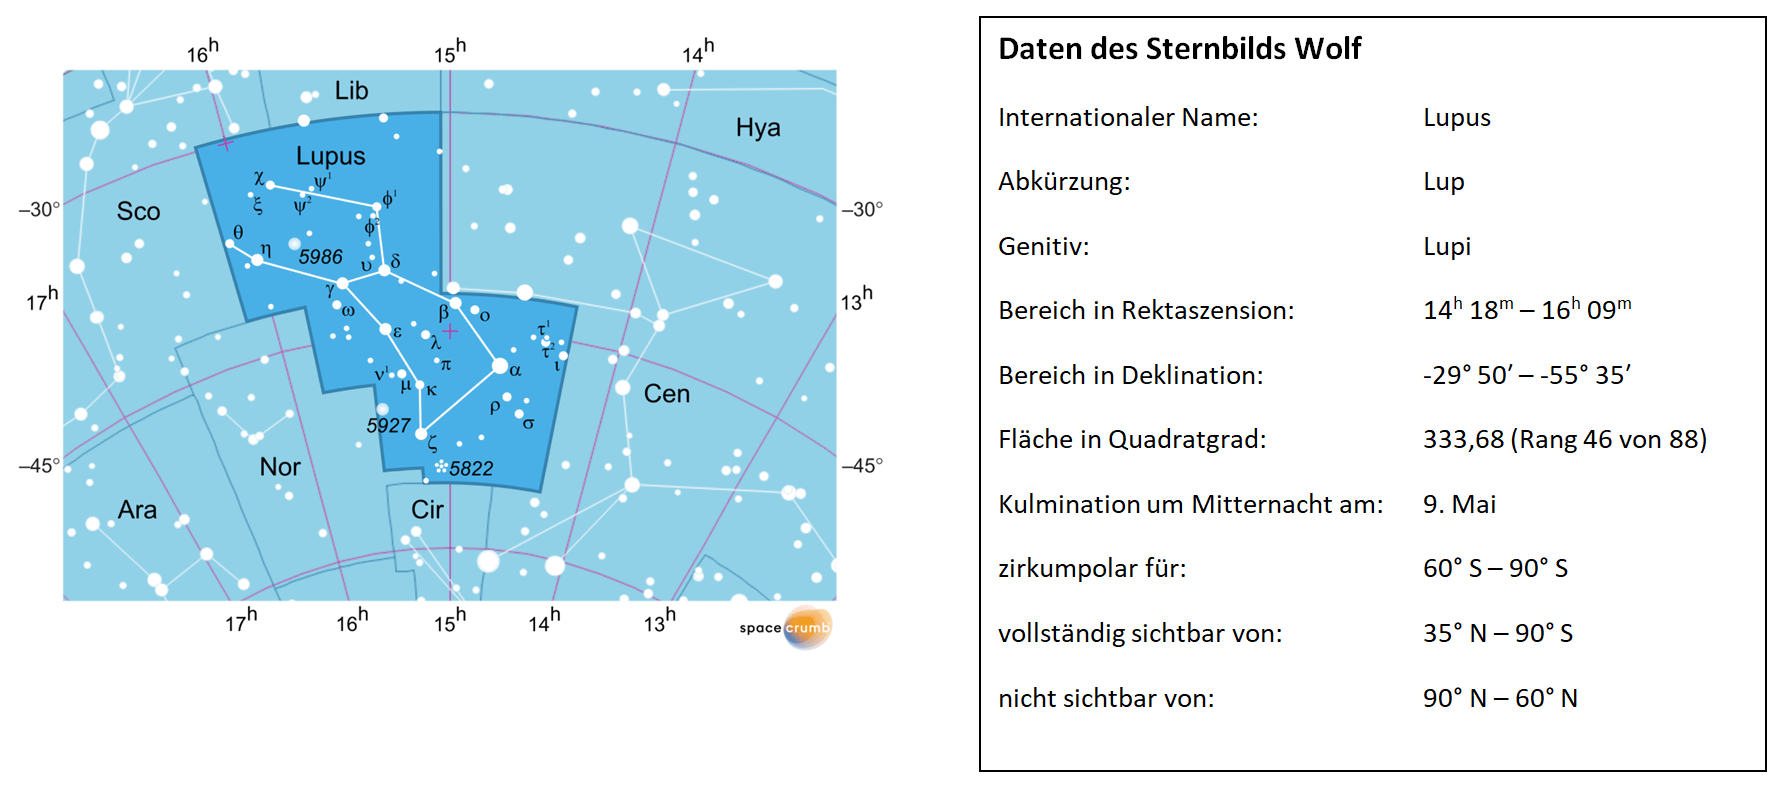 Links zeigt eine mit Koordinaten versehene Karte eines Himmelsausschnitts weiße Sterne auf hellblauem Hintergrund. Die Fläche, die das Sternbild Wolf einnimmt, ist dunkelblau hervorgehoben. Eine Tabelle rechts gibt wichtige Daten des Sternbilds Wolf an.